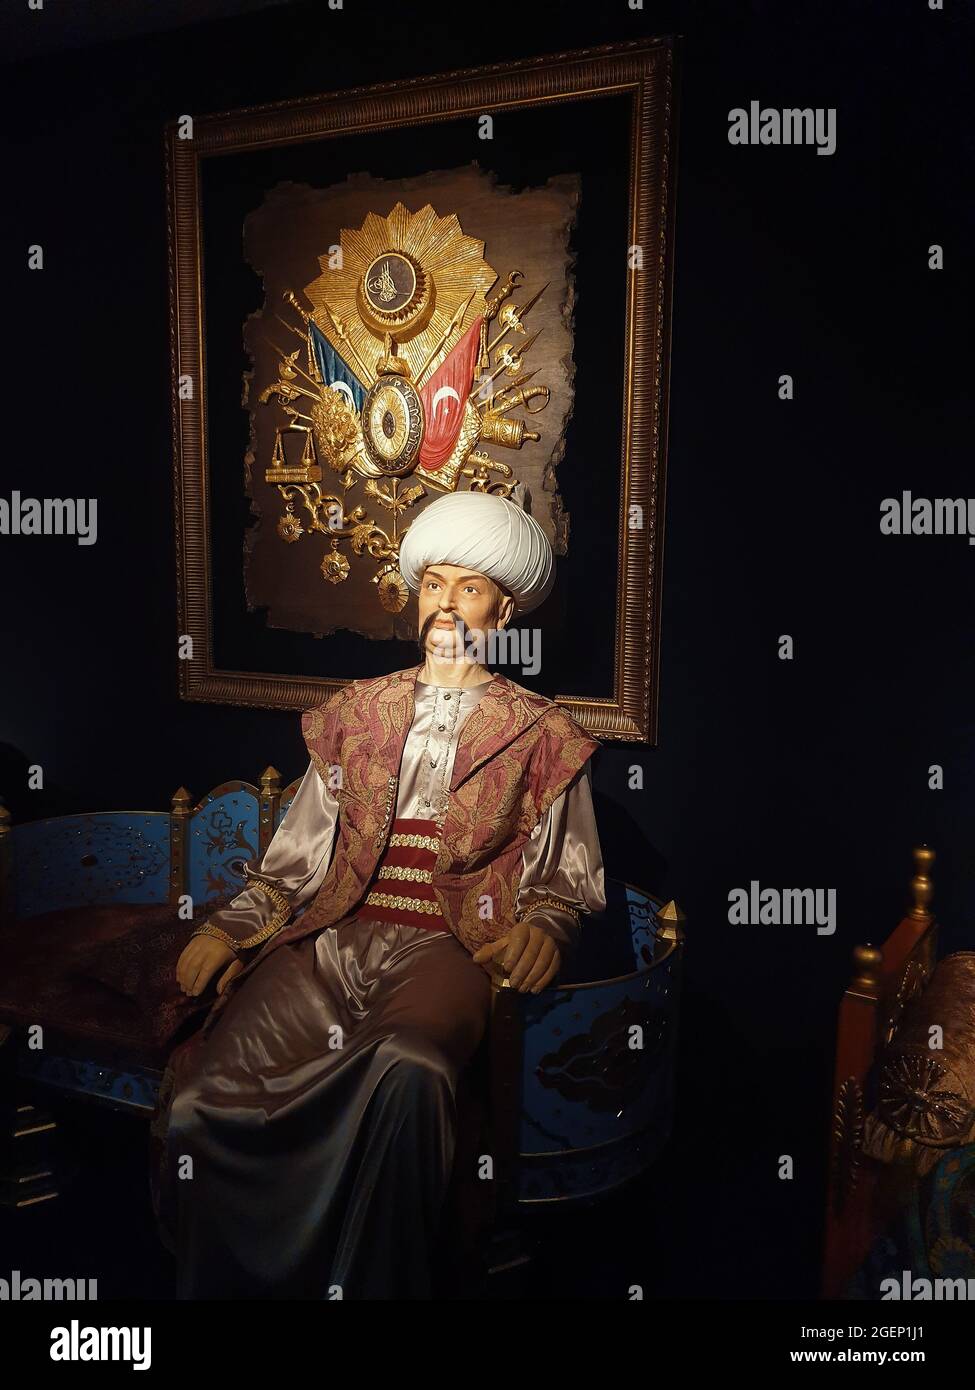 Eskisehir, Turchia, 7 giugno 2019: Scultura di Alp Arslan, il secondo sultano del Grande Impero Seljuk, seduto sul suo trono di fronte all'emblema ottomano. Foto Stock